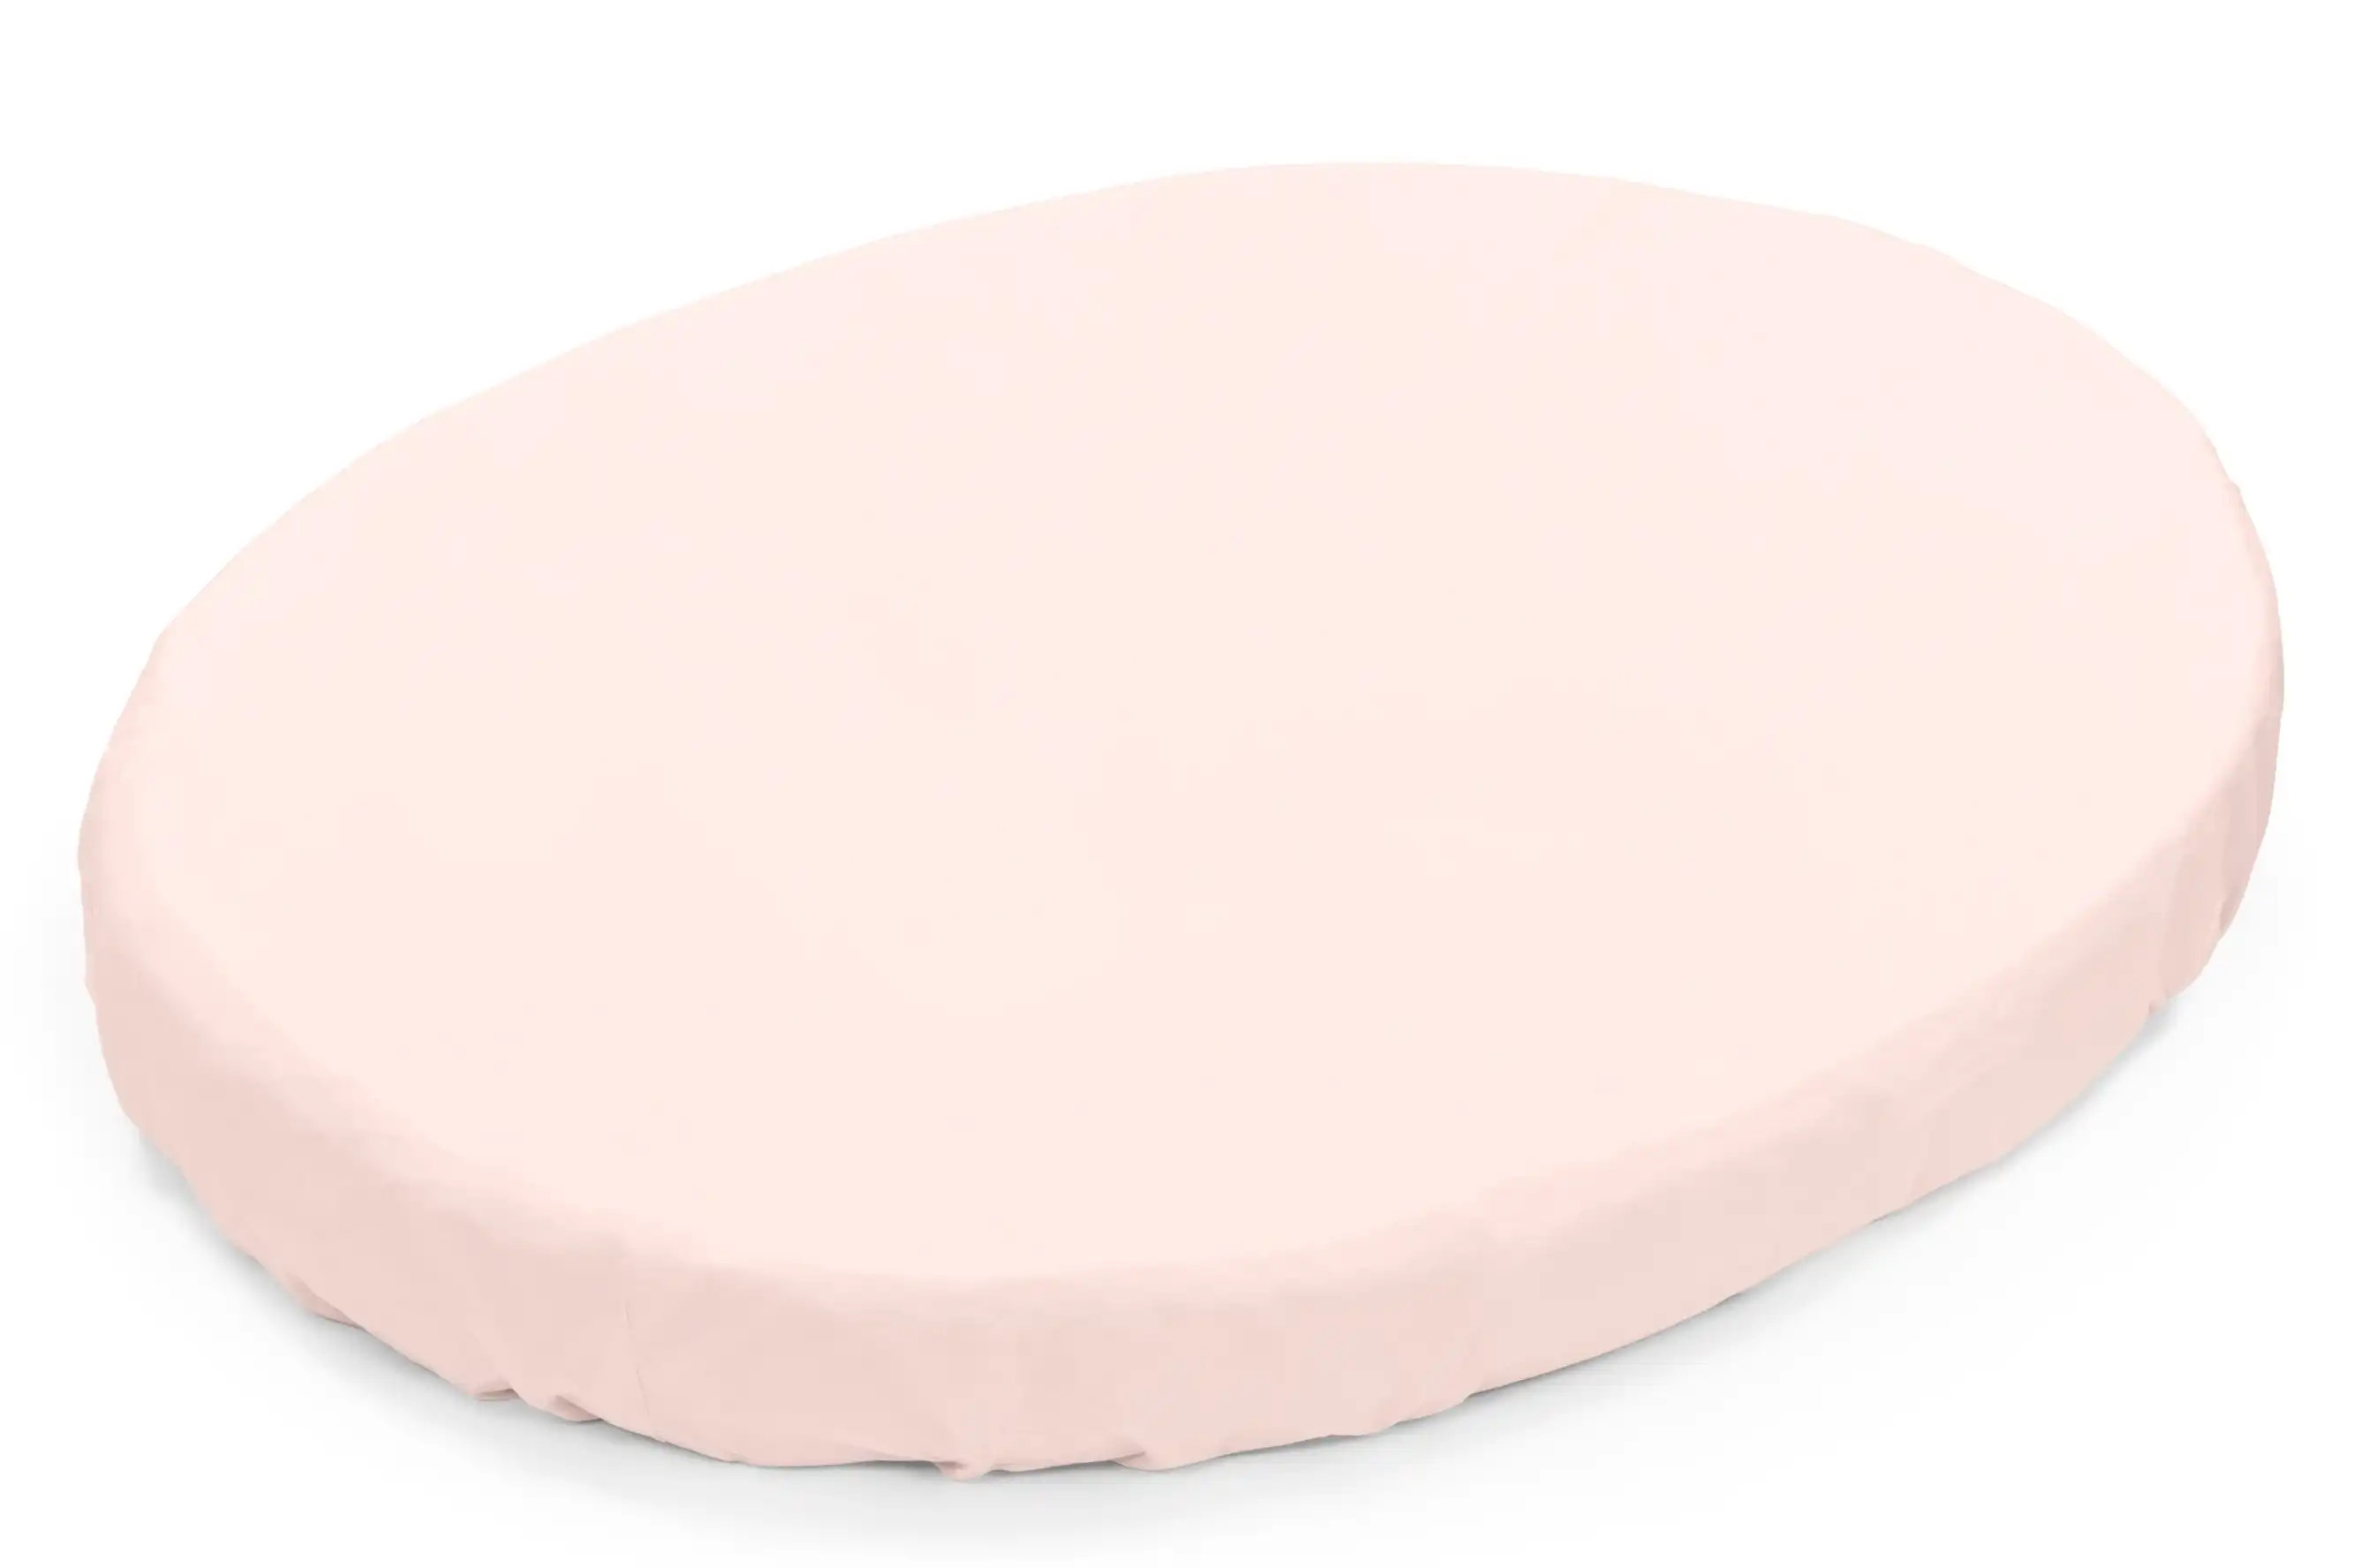 Stokke Sleepi Mini Fitted Sheet Peachy Pink